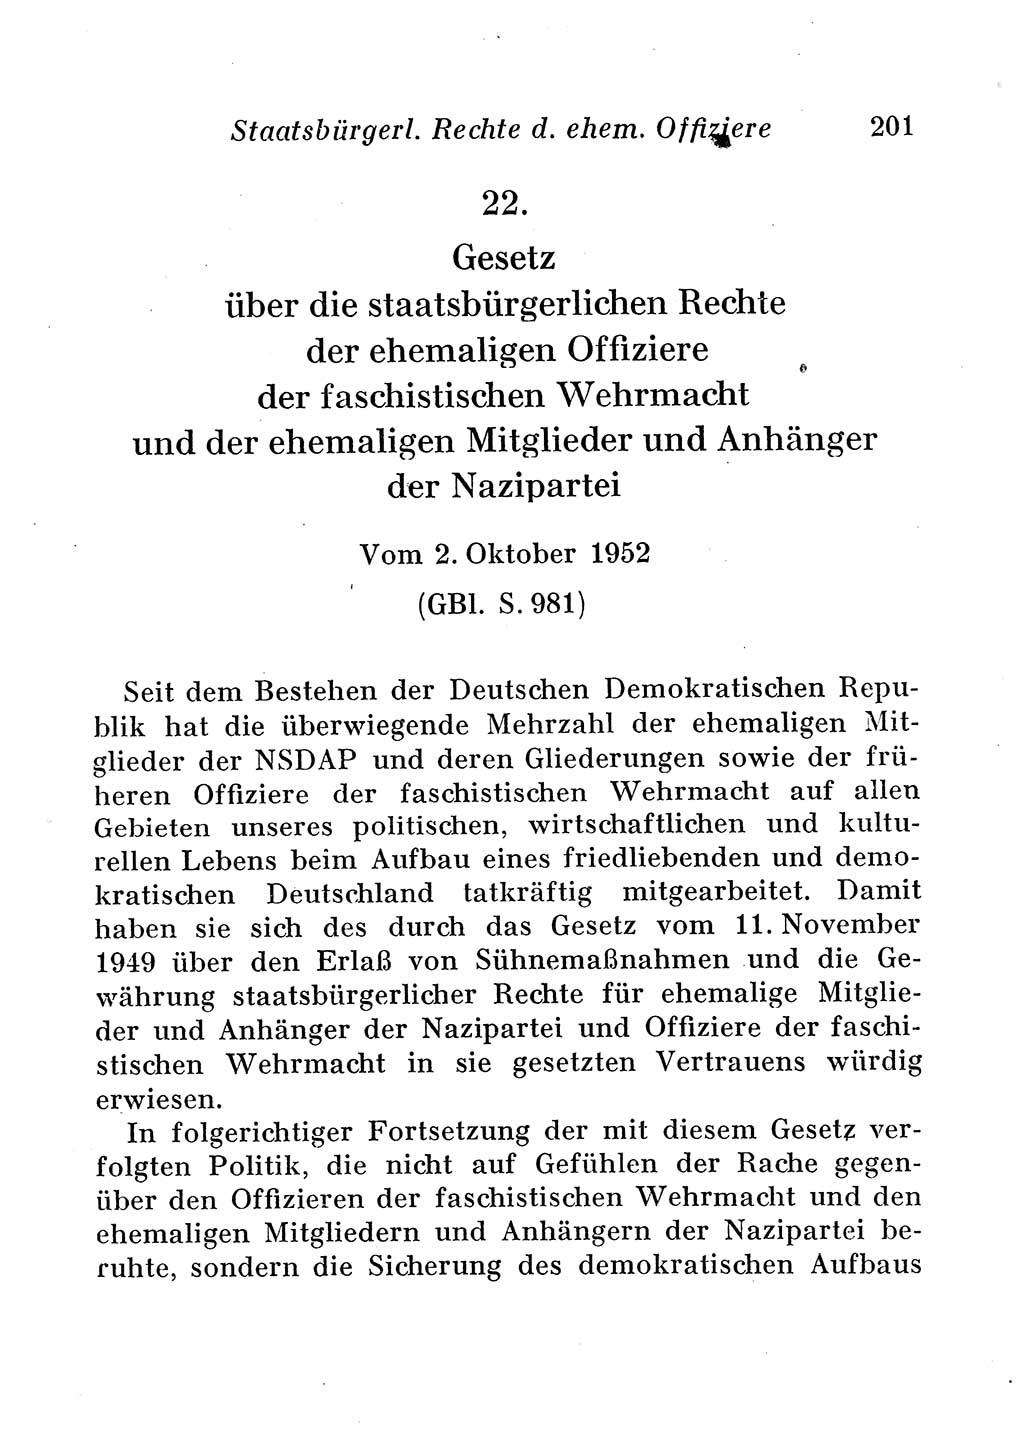 Staats- und verwaltungsrechtliche Gesetze der Deutschen Demokratischen Republik (DDR) 1958, Seite 201 (StVerwR Ges. DDR 1958, S. 201)